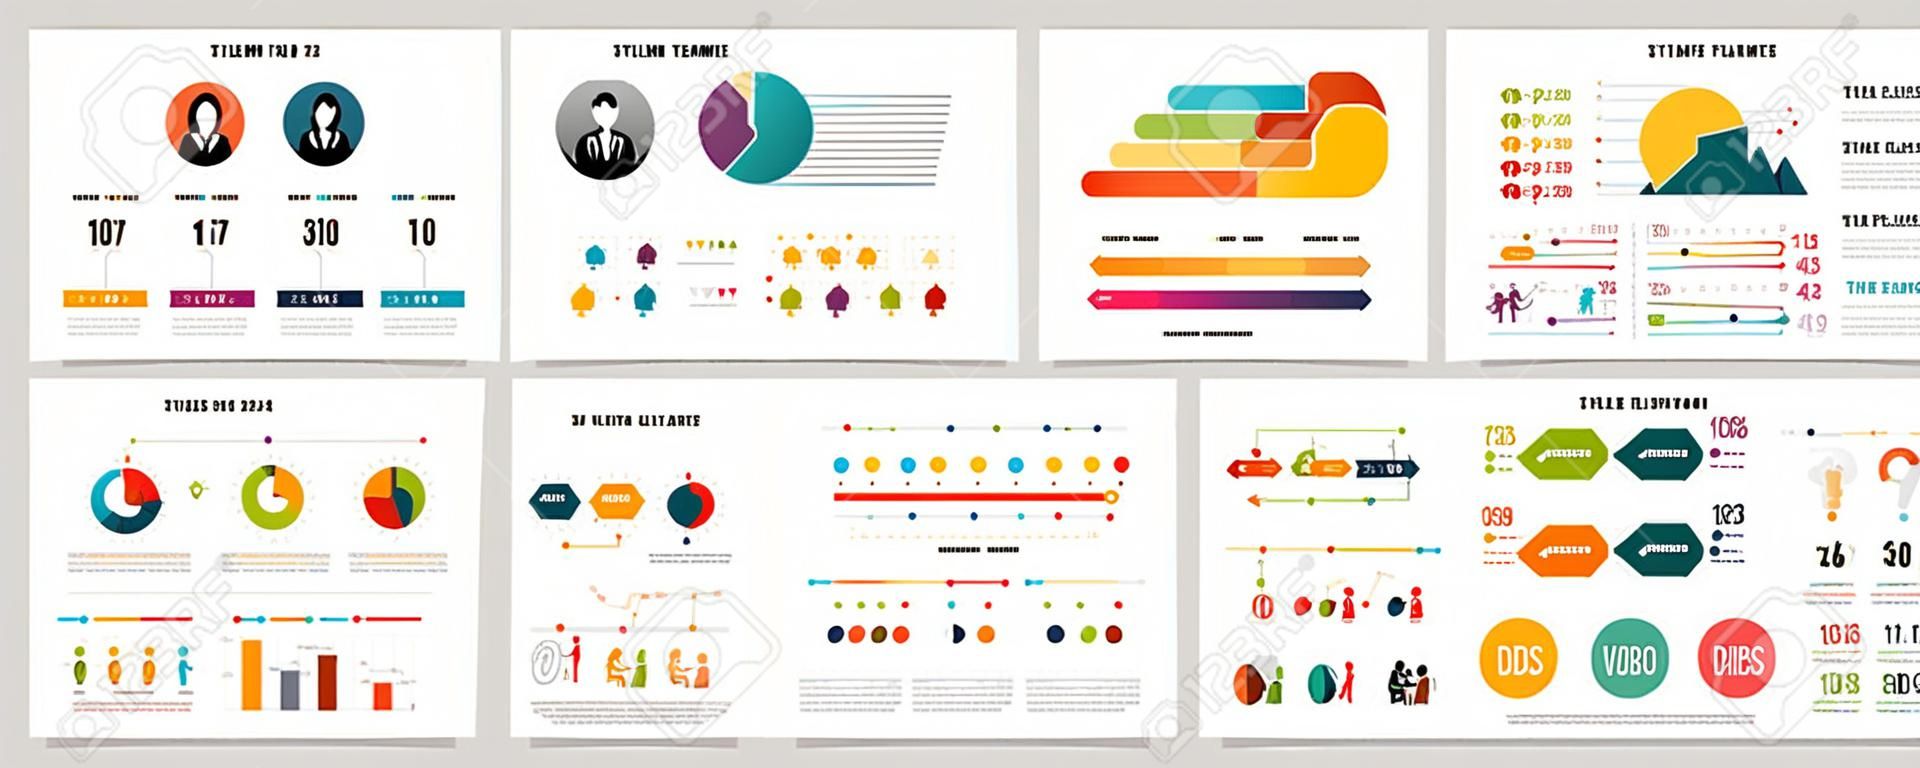 Insieme di grafici infographic di concetto di lavoro di squadra o flusso di lavoro colorato. Elementi di design aziendale per modelli di diapositive della presentazione. Può essere utilizzato per la relazione annuale, la pubblicità, il layout del volantino e il design di banner.